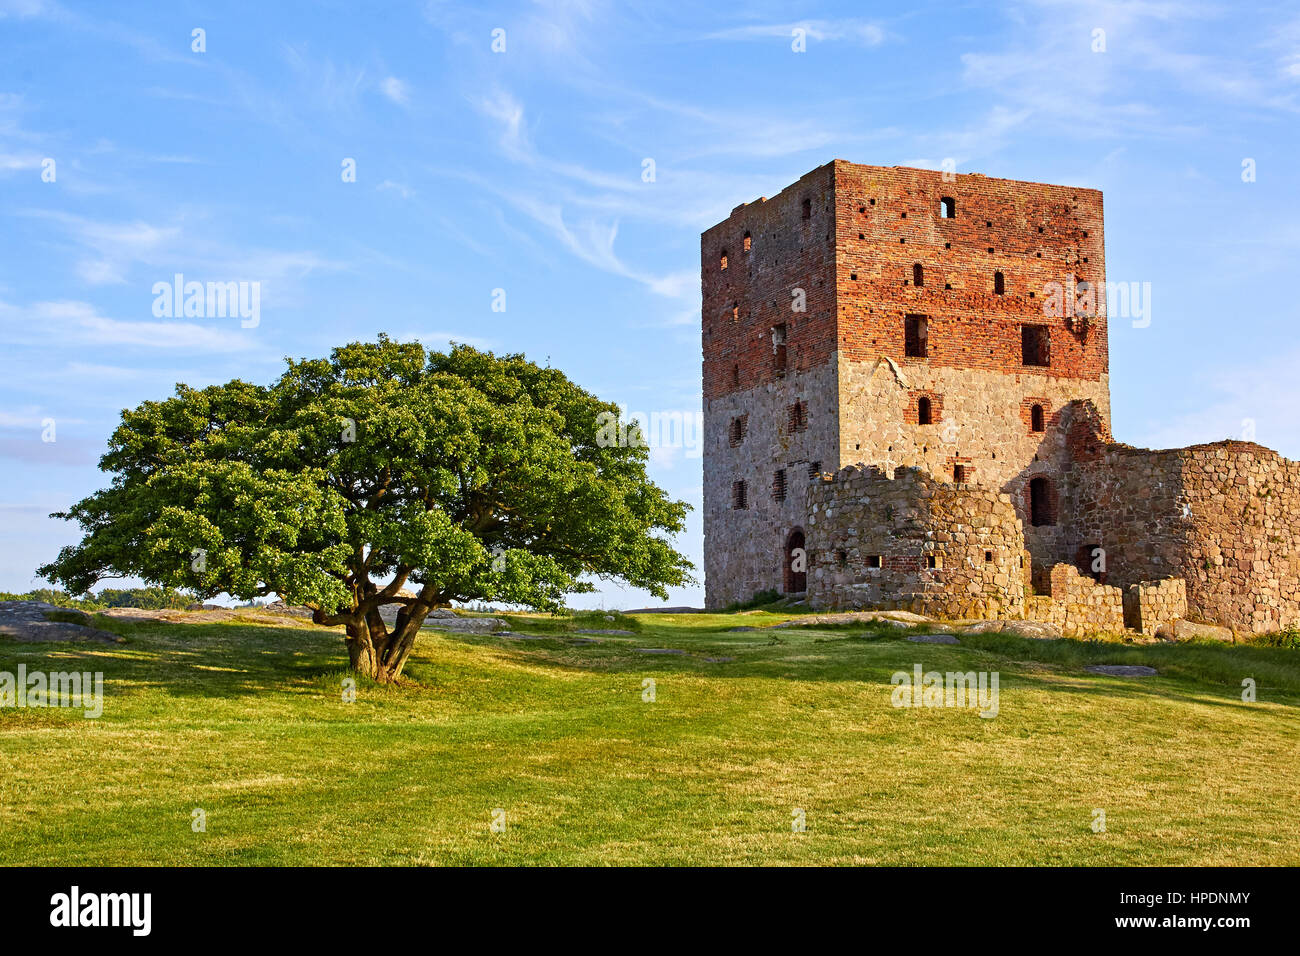 La torre dell'antico castello danese rovina sulla Bornholm, situato accanto a un antico albero di quercia Foto Stock